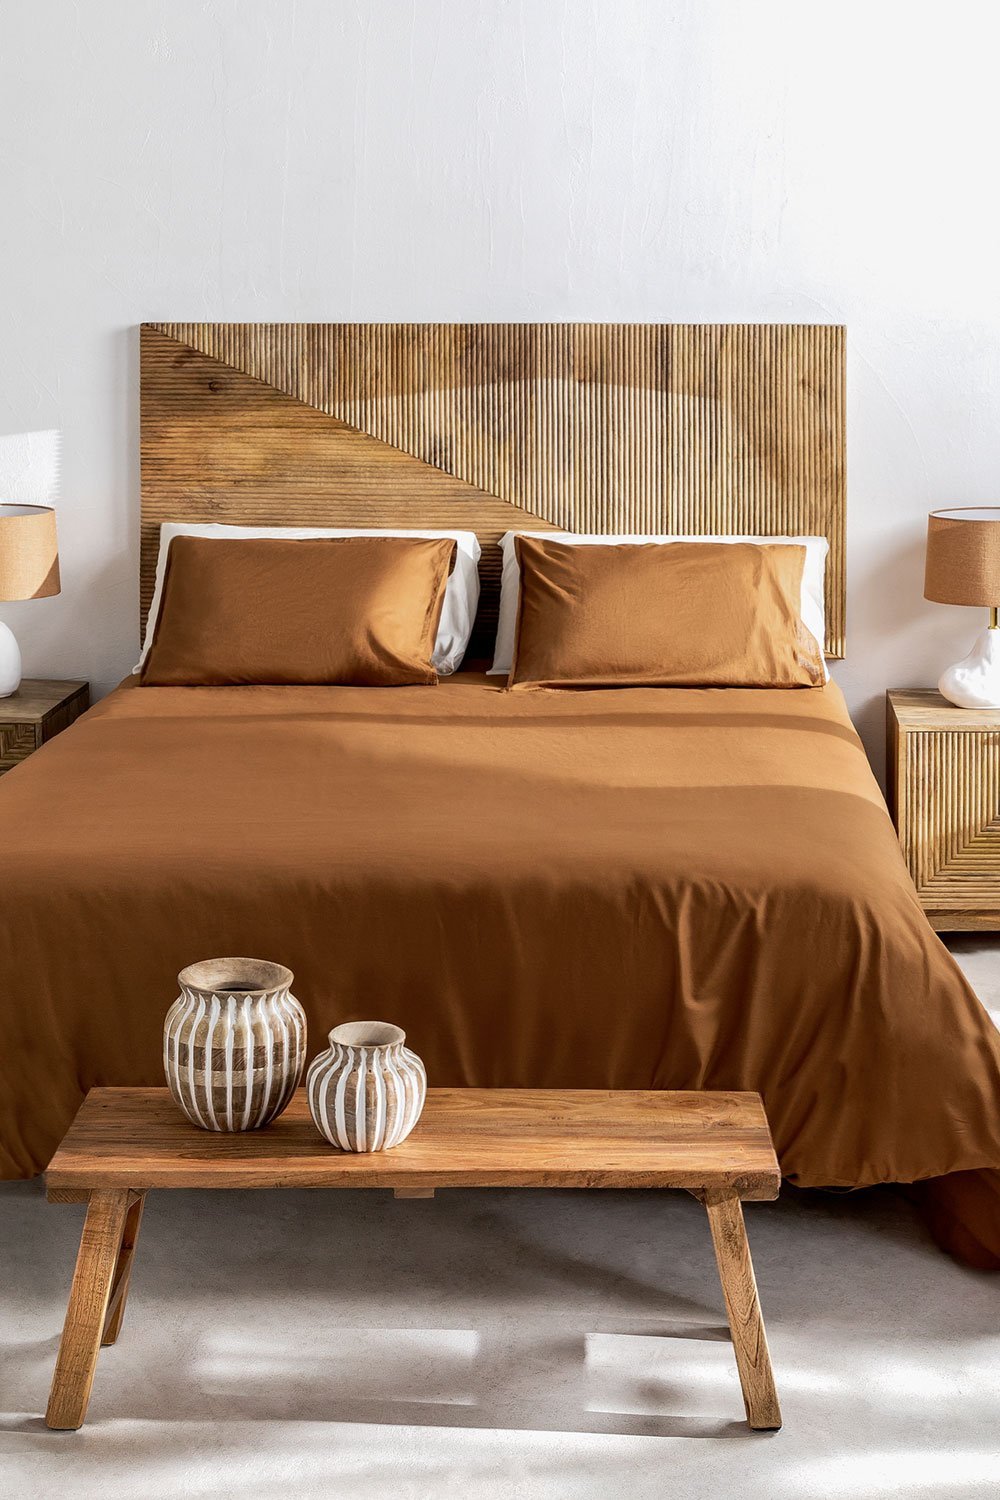 Hoofdeinde voor bed van 150 cm in mangohout  van Baty-Design, galerij beeld 1